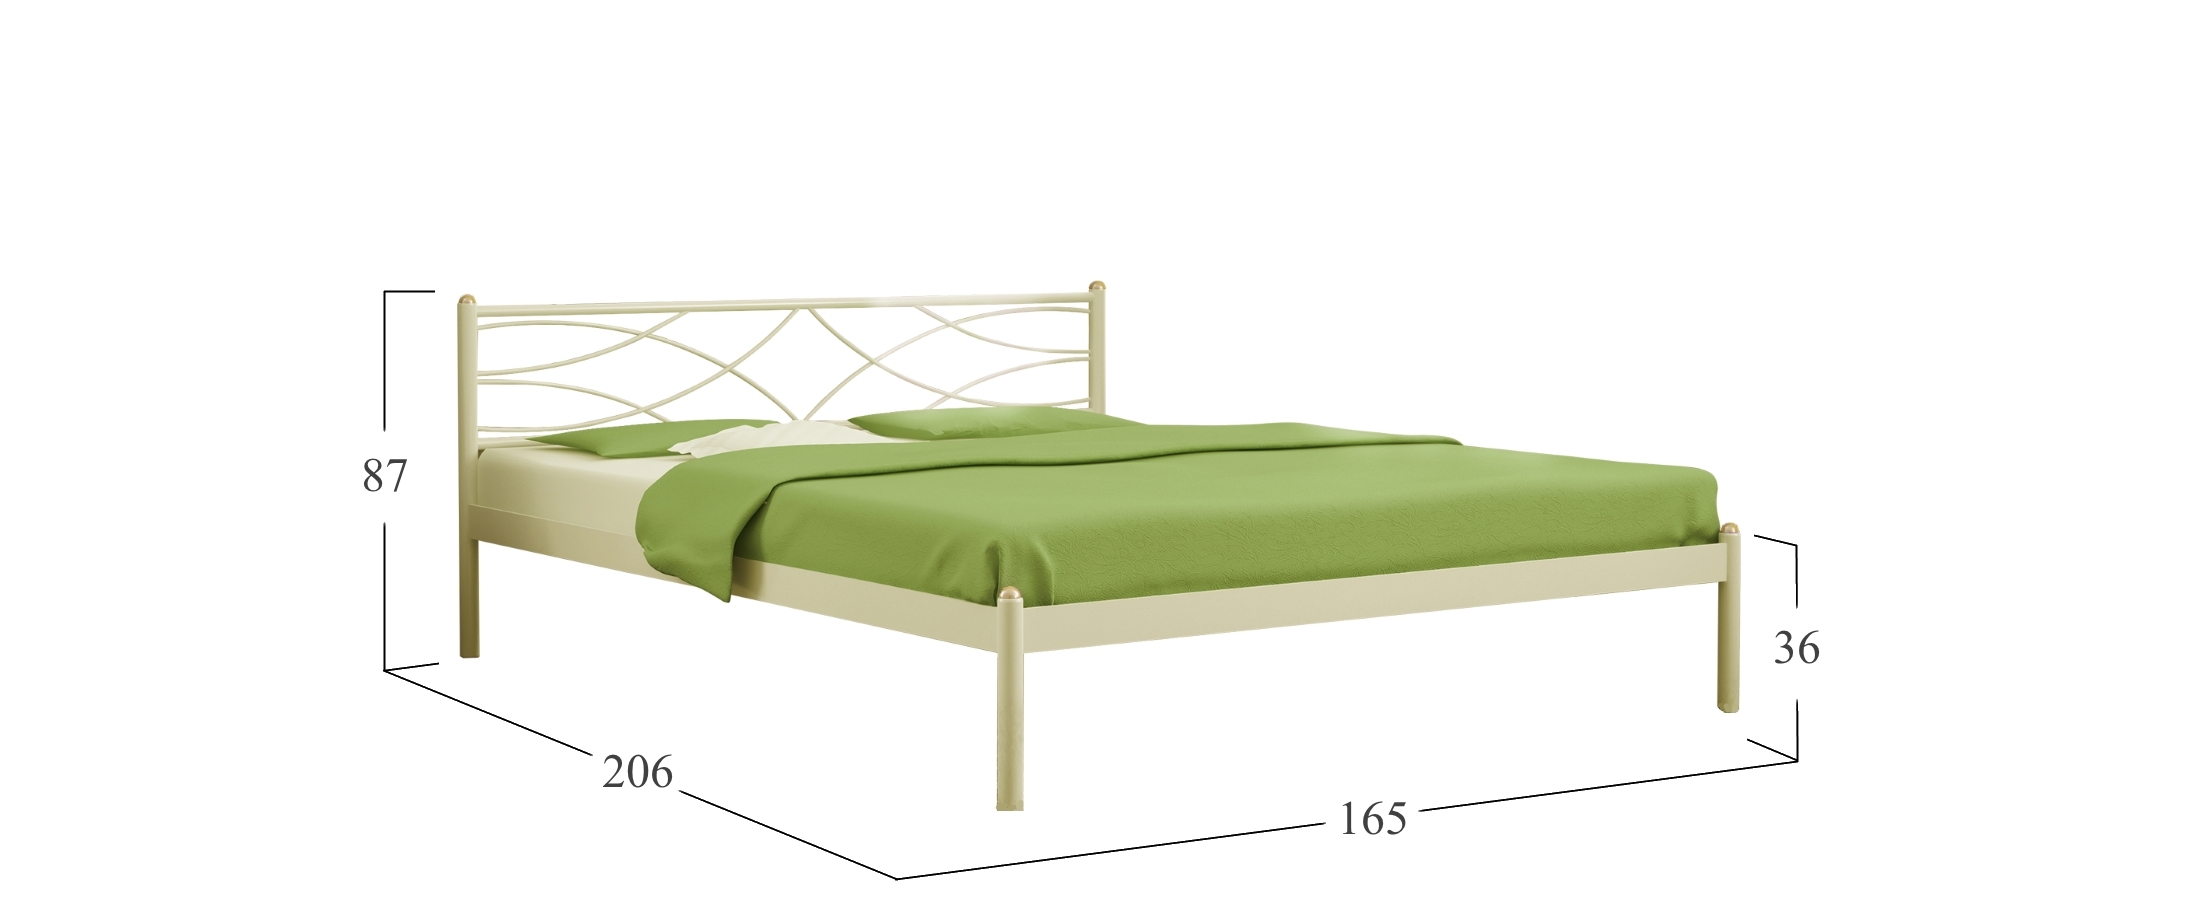 Кровати размеры 160 см